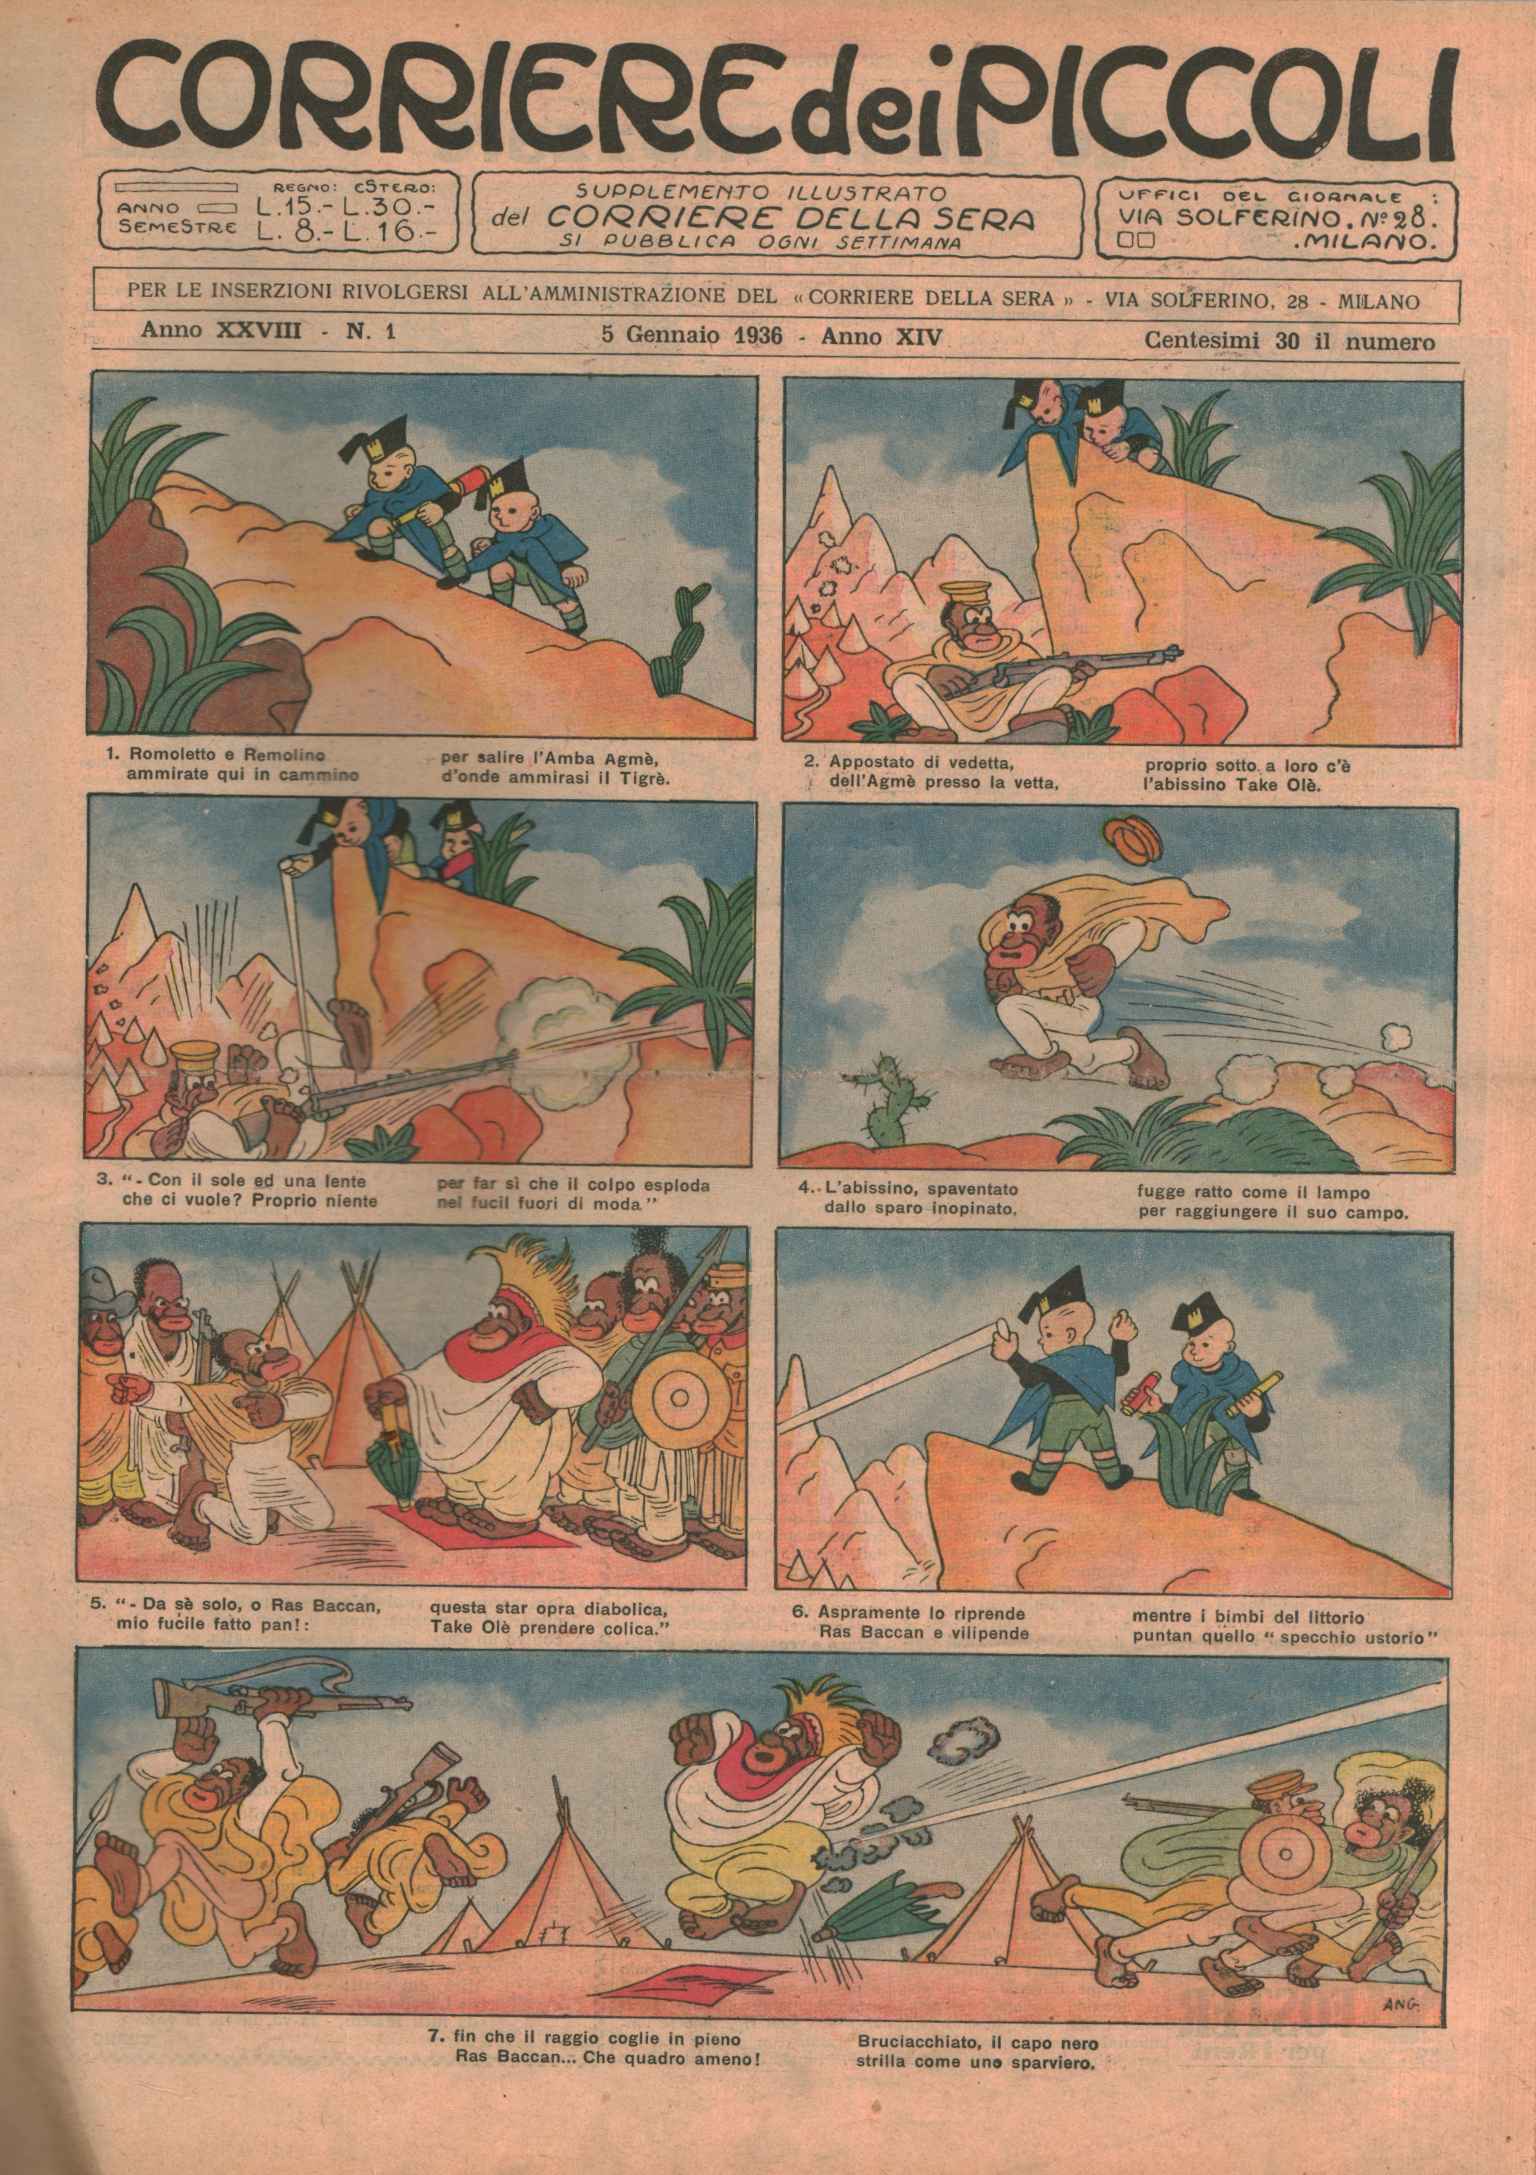 Corriere dei piccolo 1936 (52 issues -, Corriere dei piccolo 1936. Complete year